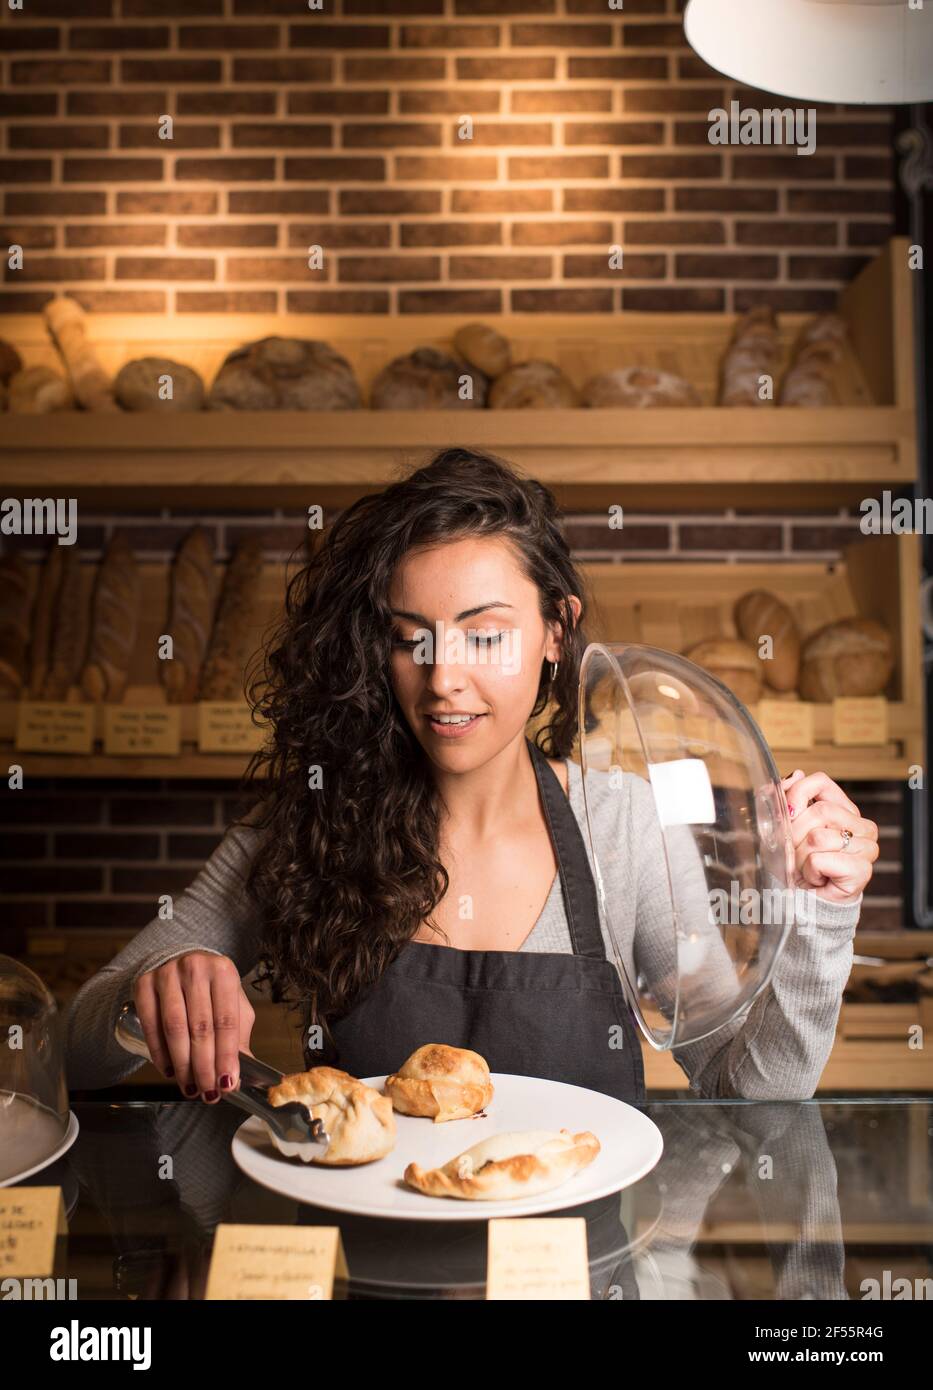 Junge Besitzerin, die in der Bäckerei Backwaren auf dem Teller serviert hat Stockfoto